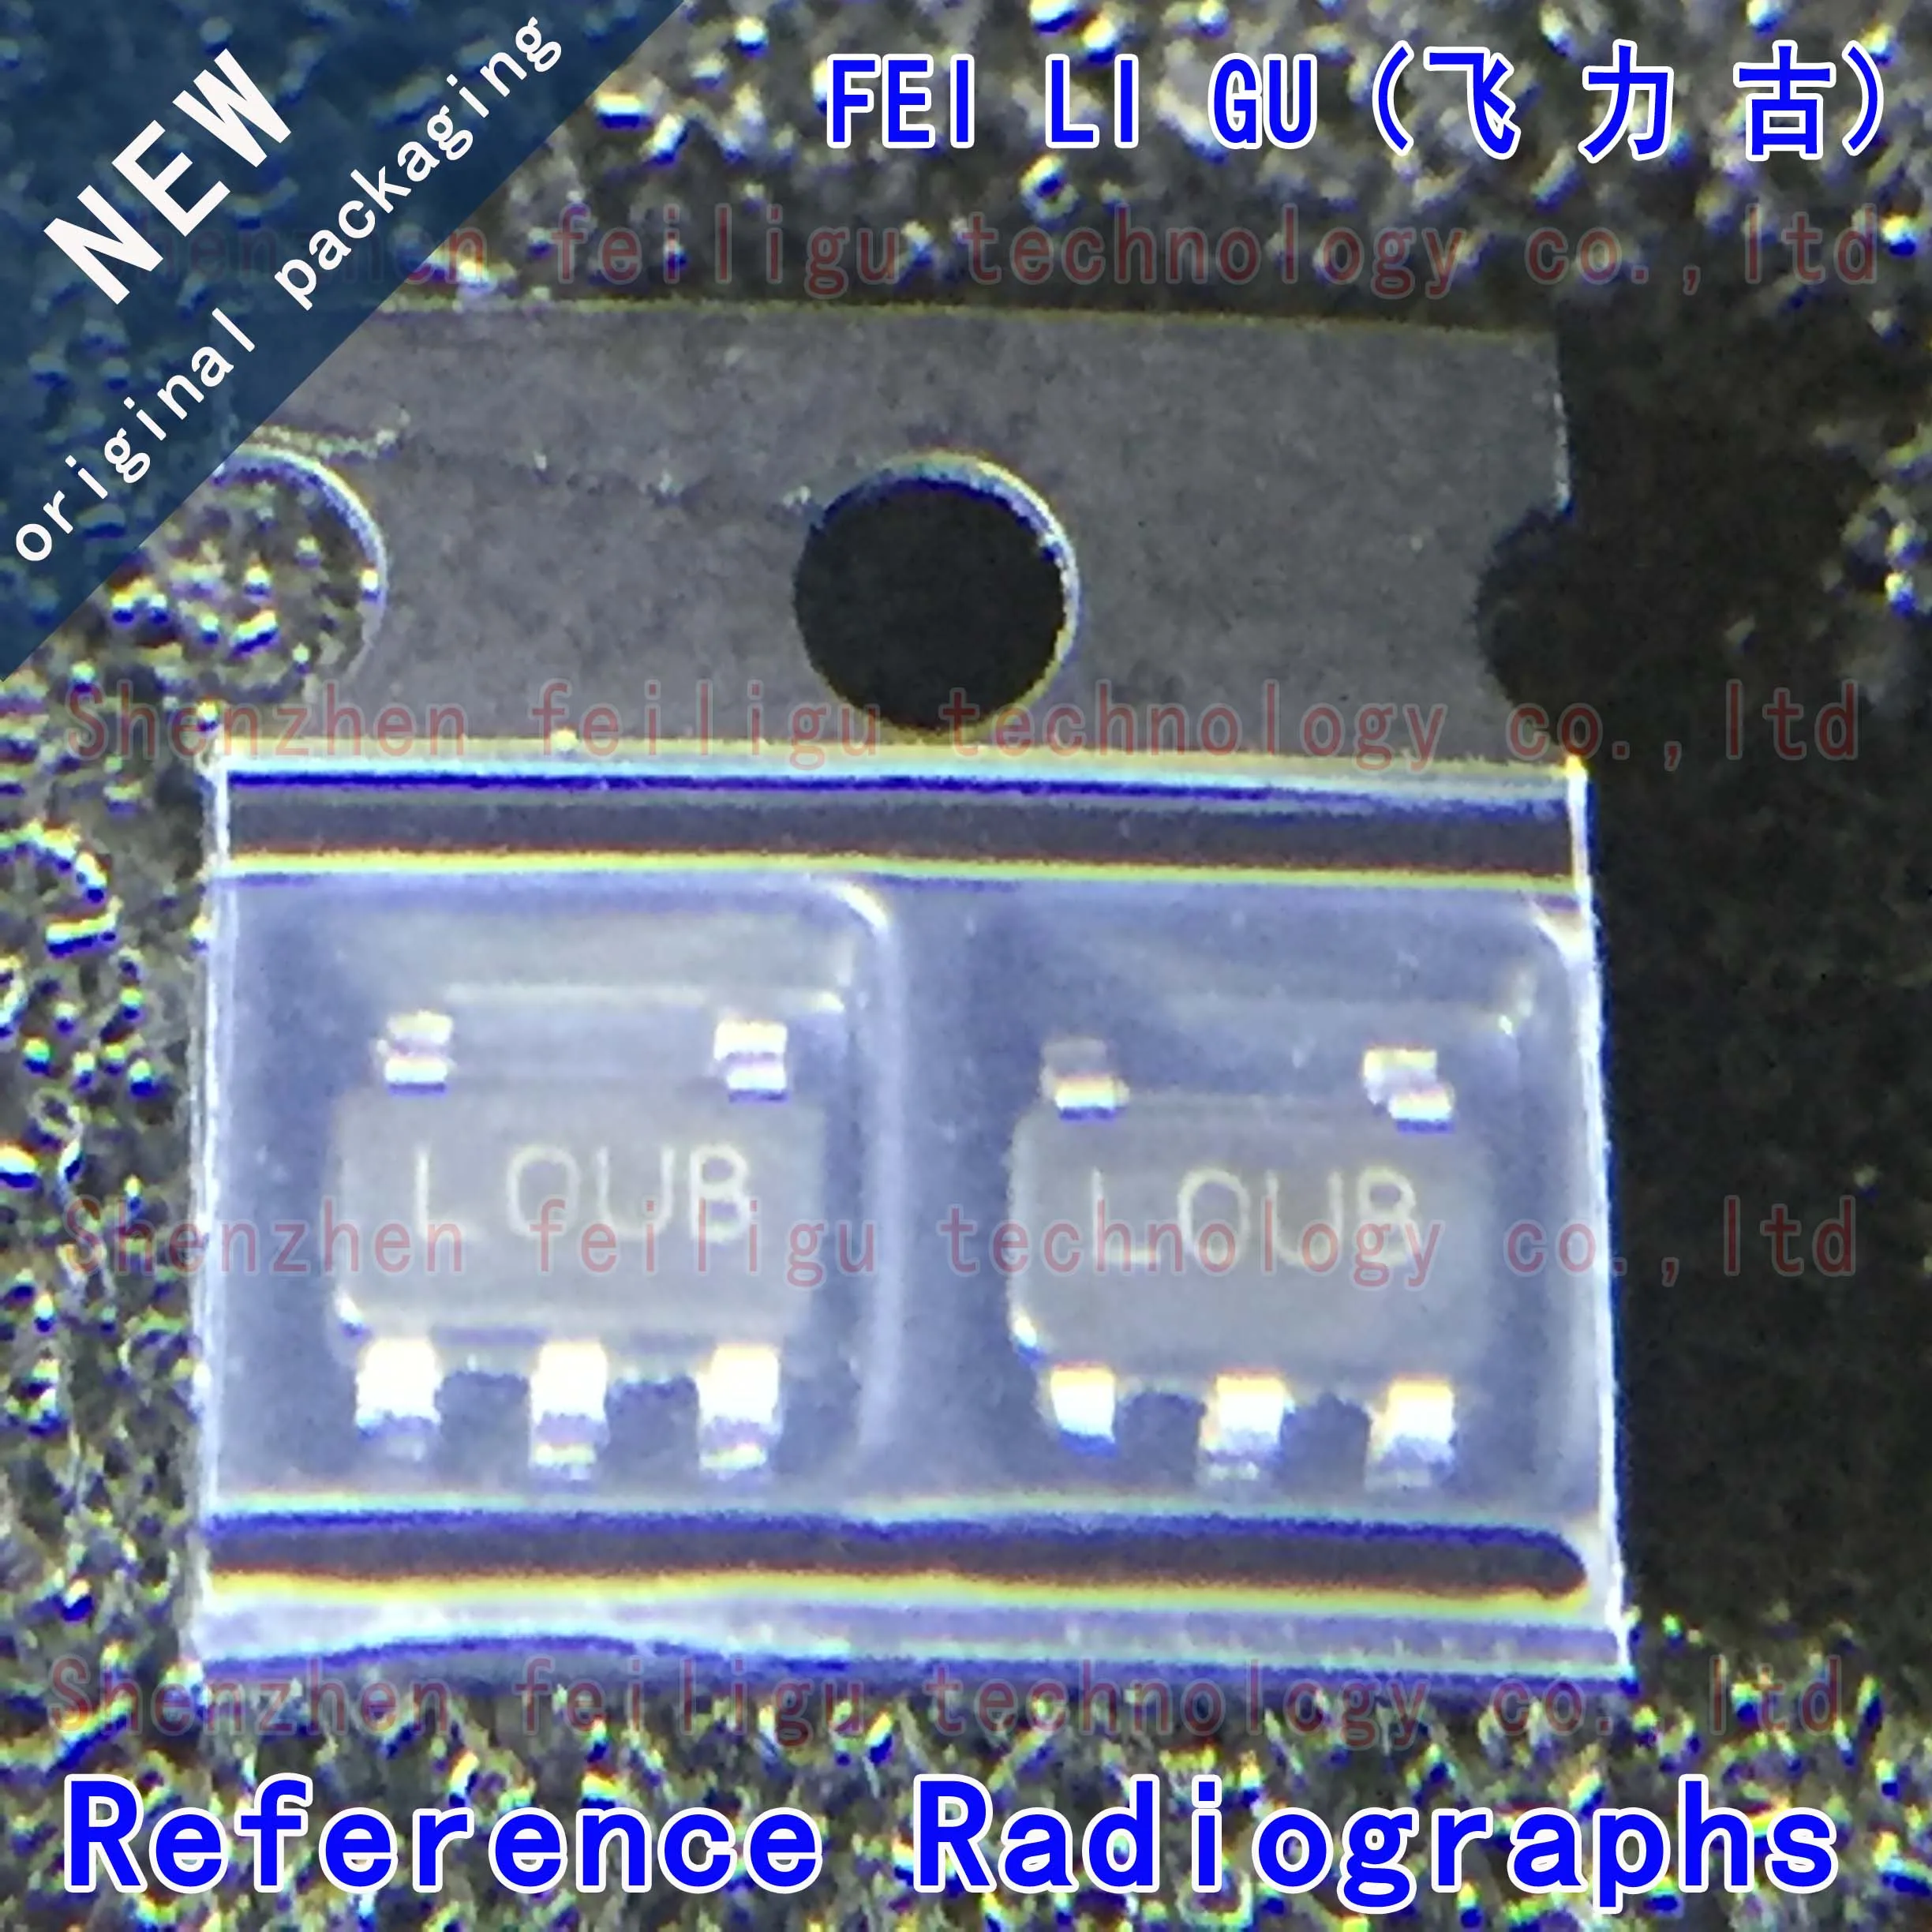 New original LP2985IM5X-5.0/NOPB LP2985IM5X-5.0 LP2985IM5-5.0 LP2985 silkscreen: LOUB package: SOT23-5 linear regulator chip 1 30pcs 100% new original lm321mfx nopb lm321mfx lm321mf lm321 silk screen a63a package sot23 5 operational amplifier chip